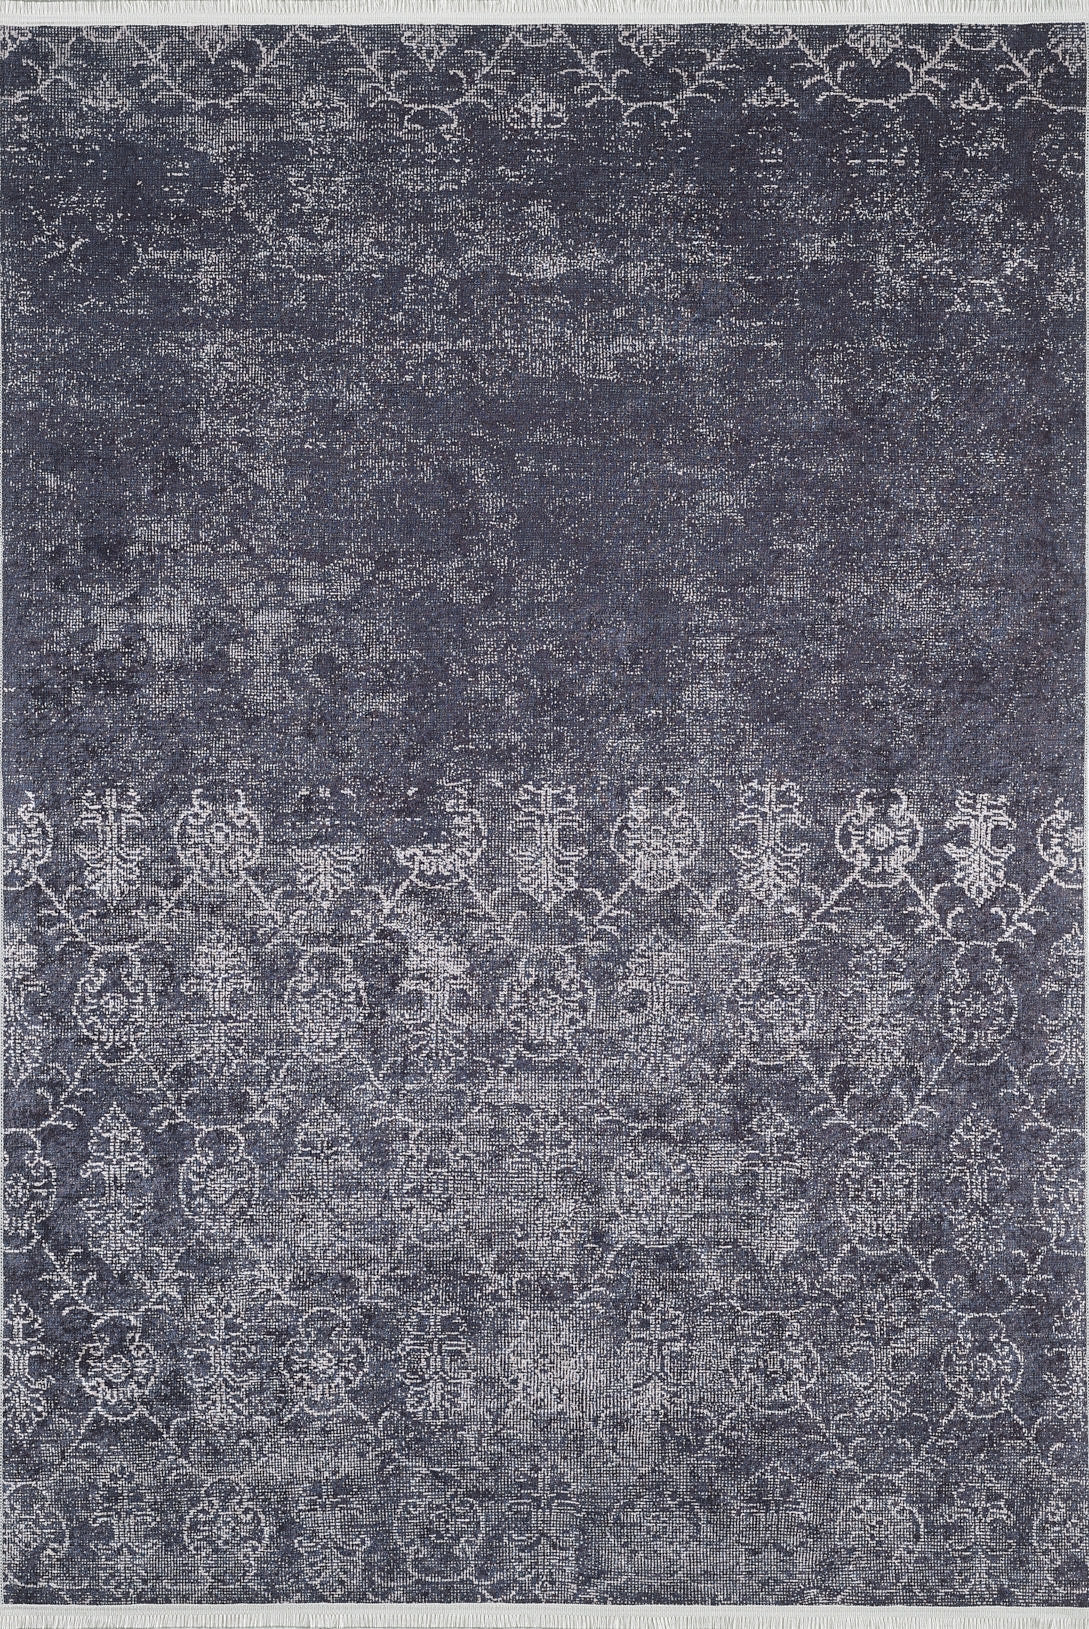 machine-washable-area-rug-Damask-Erased-Vintage-Collection-Gray-Anthracite-Black-JR1976